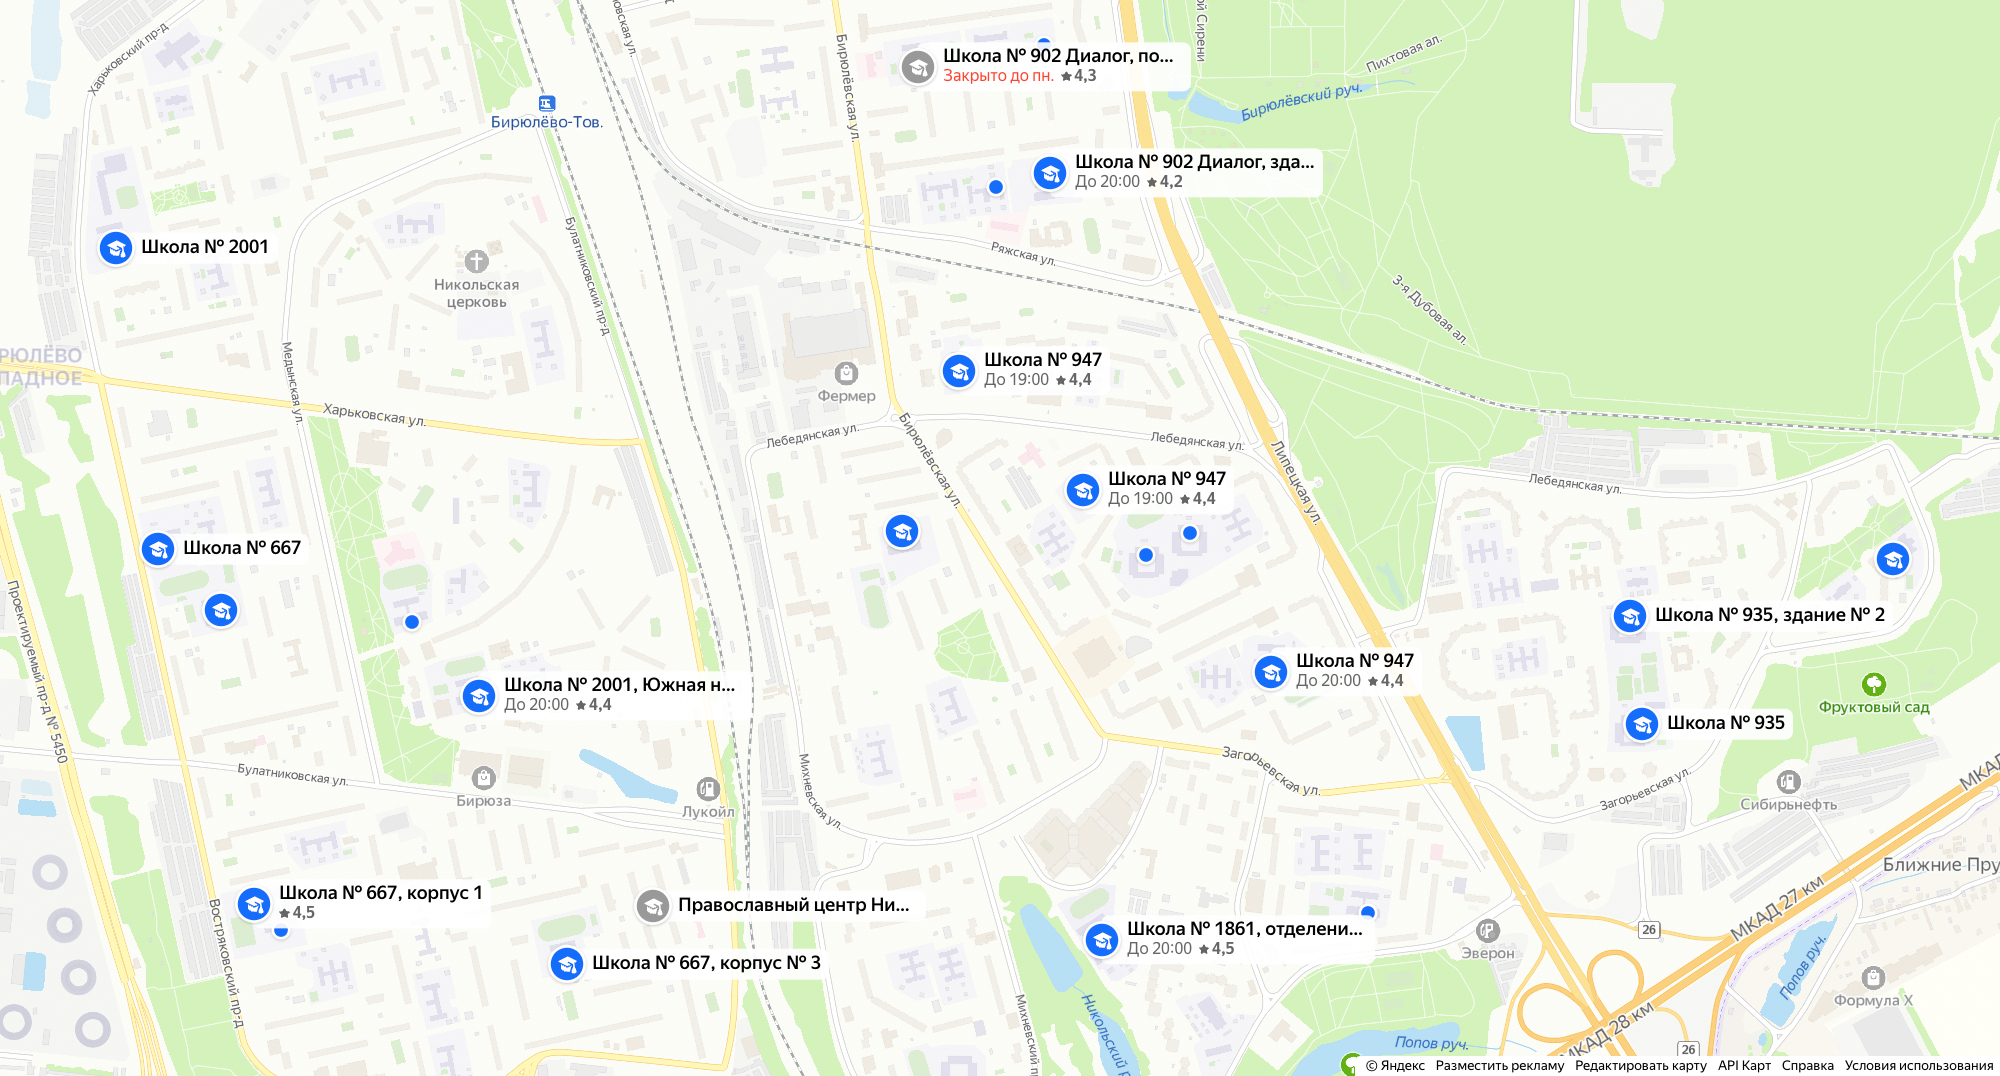 В Бирюлеве около 15 государственных школ, проблем с местами нет. Источник: «Яндекс⁠-⁠карты»